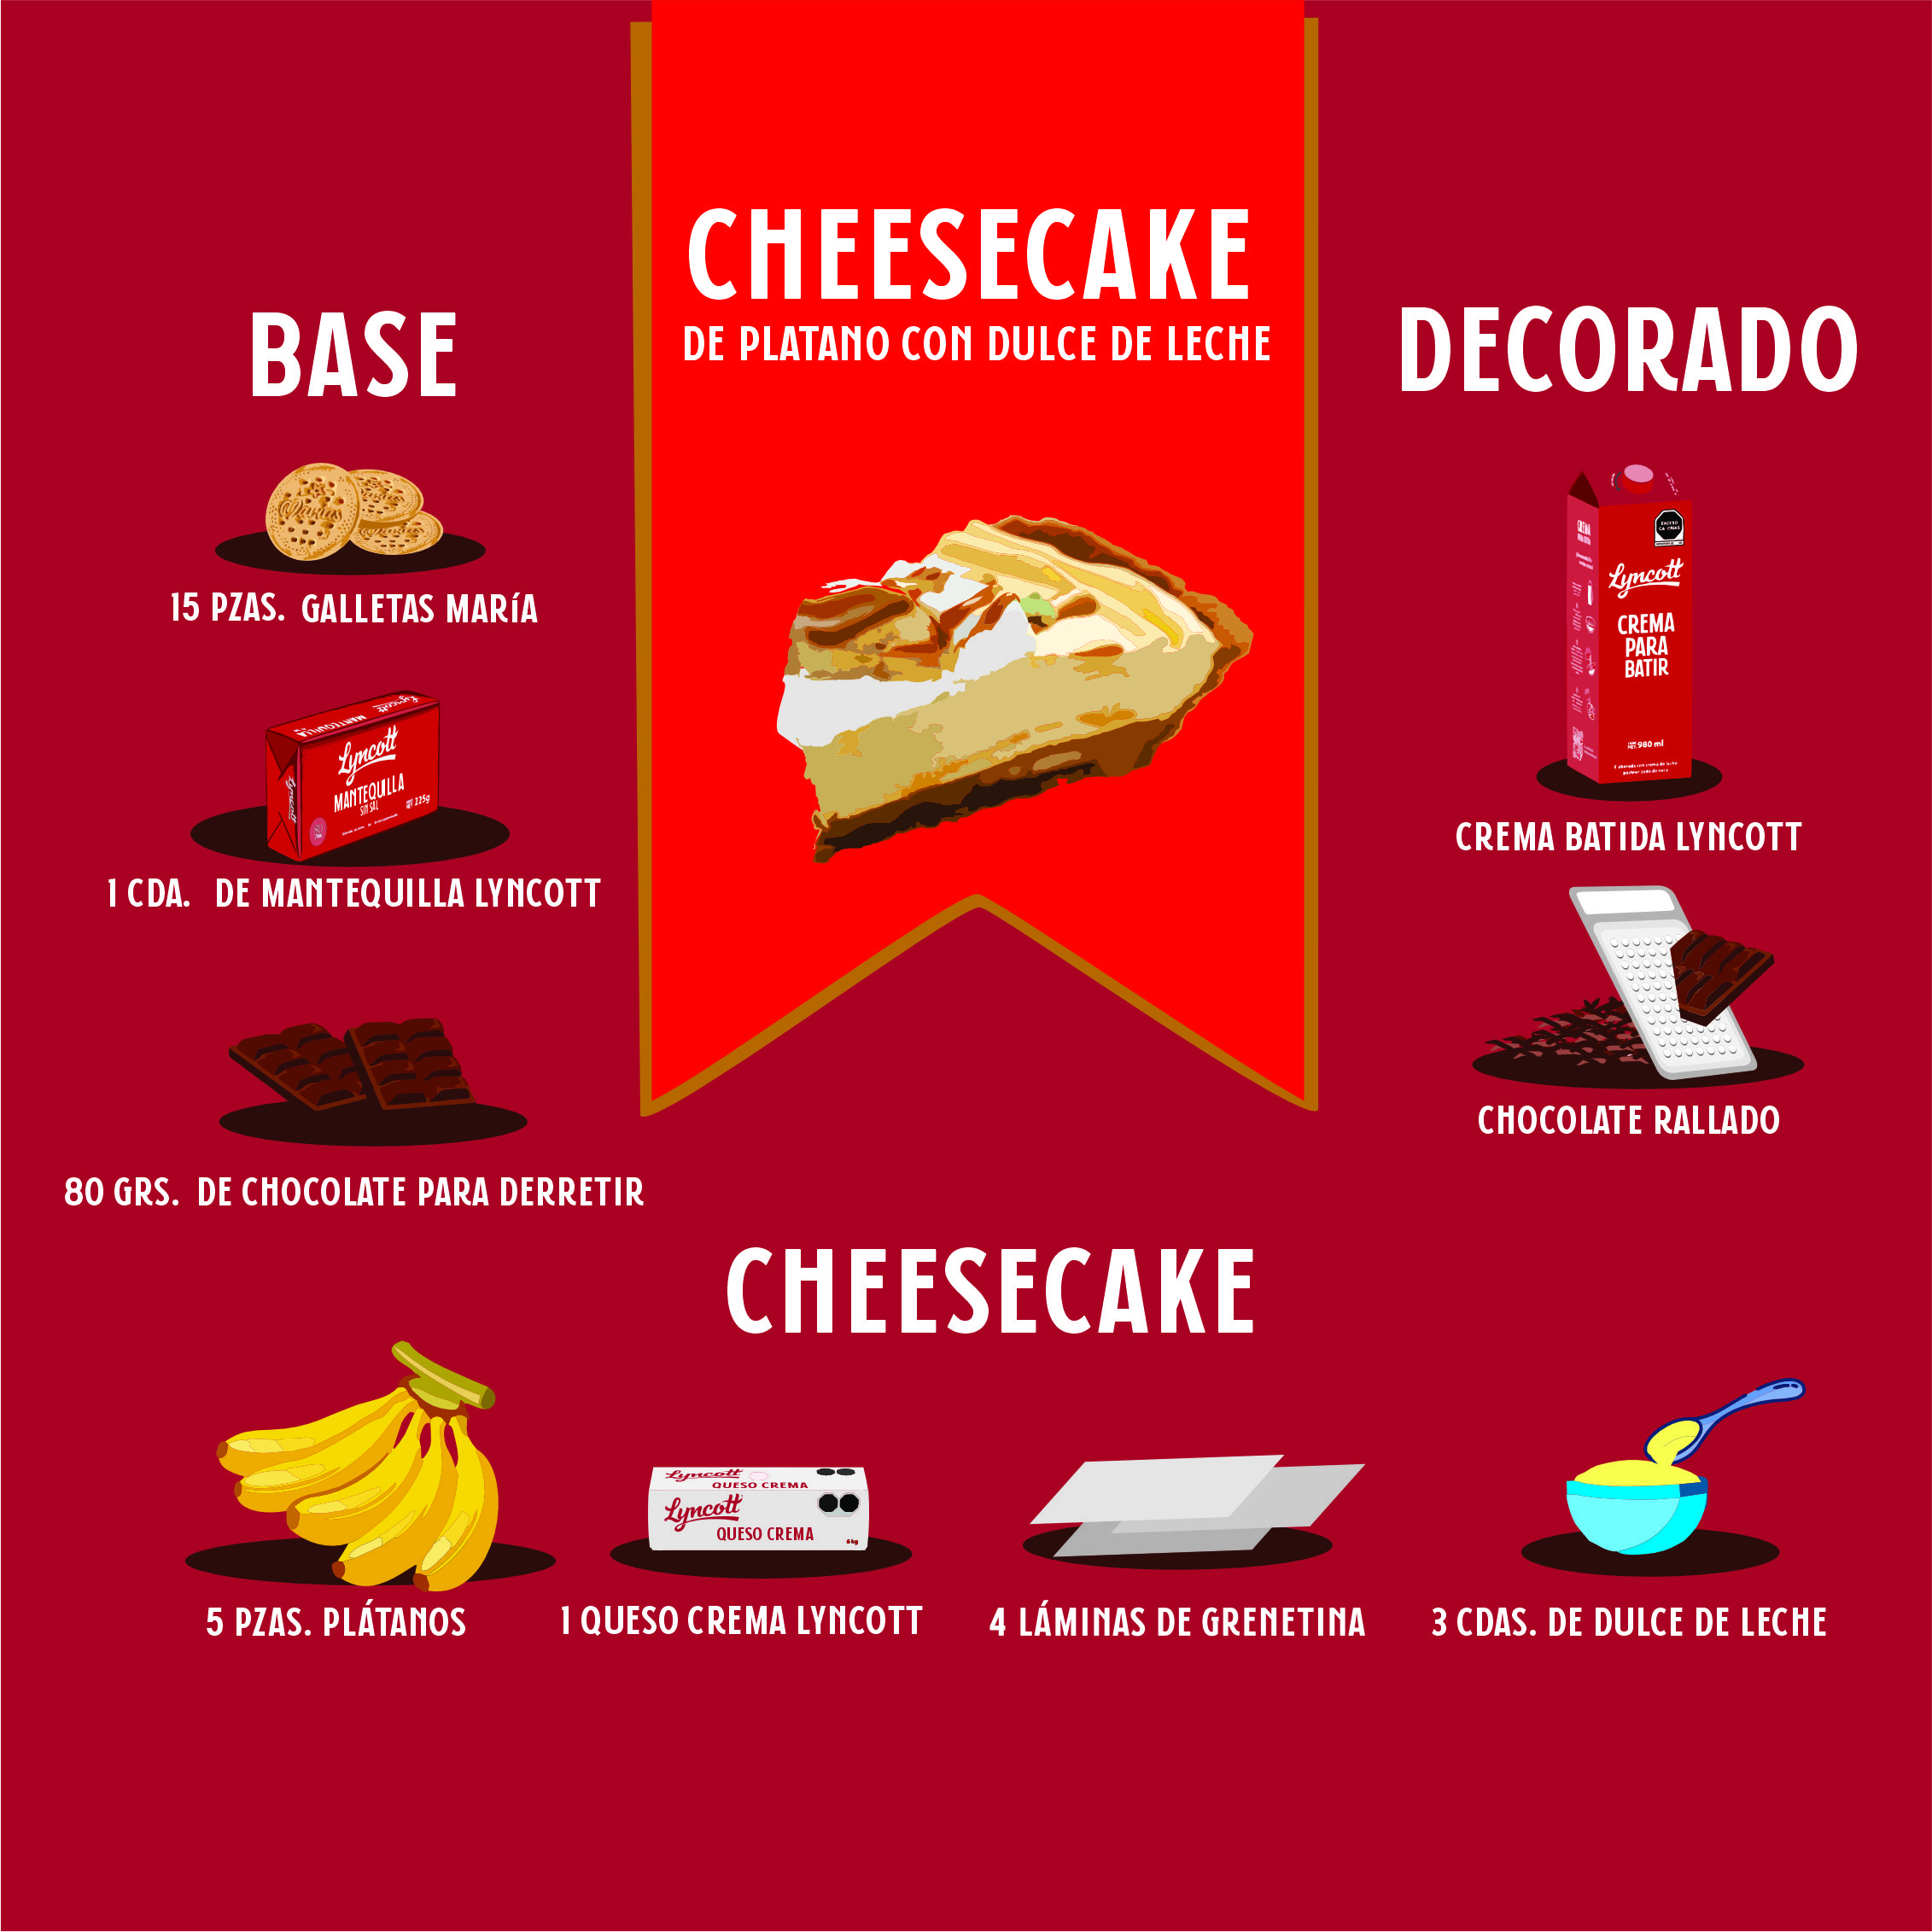 Una singular opción para disfrutar el día del cheesecake